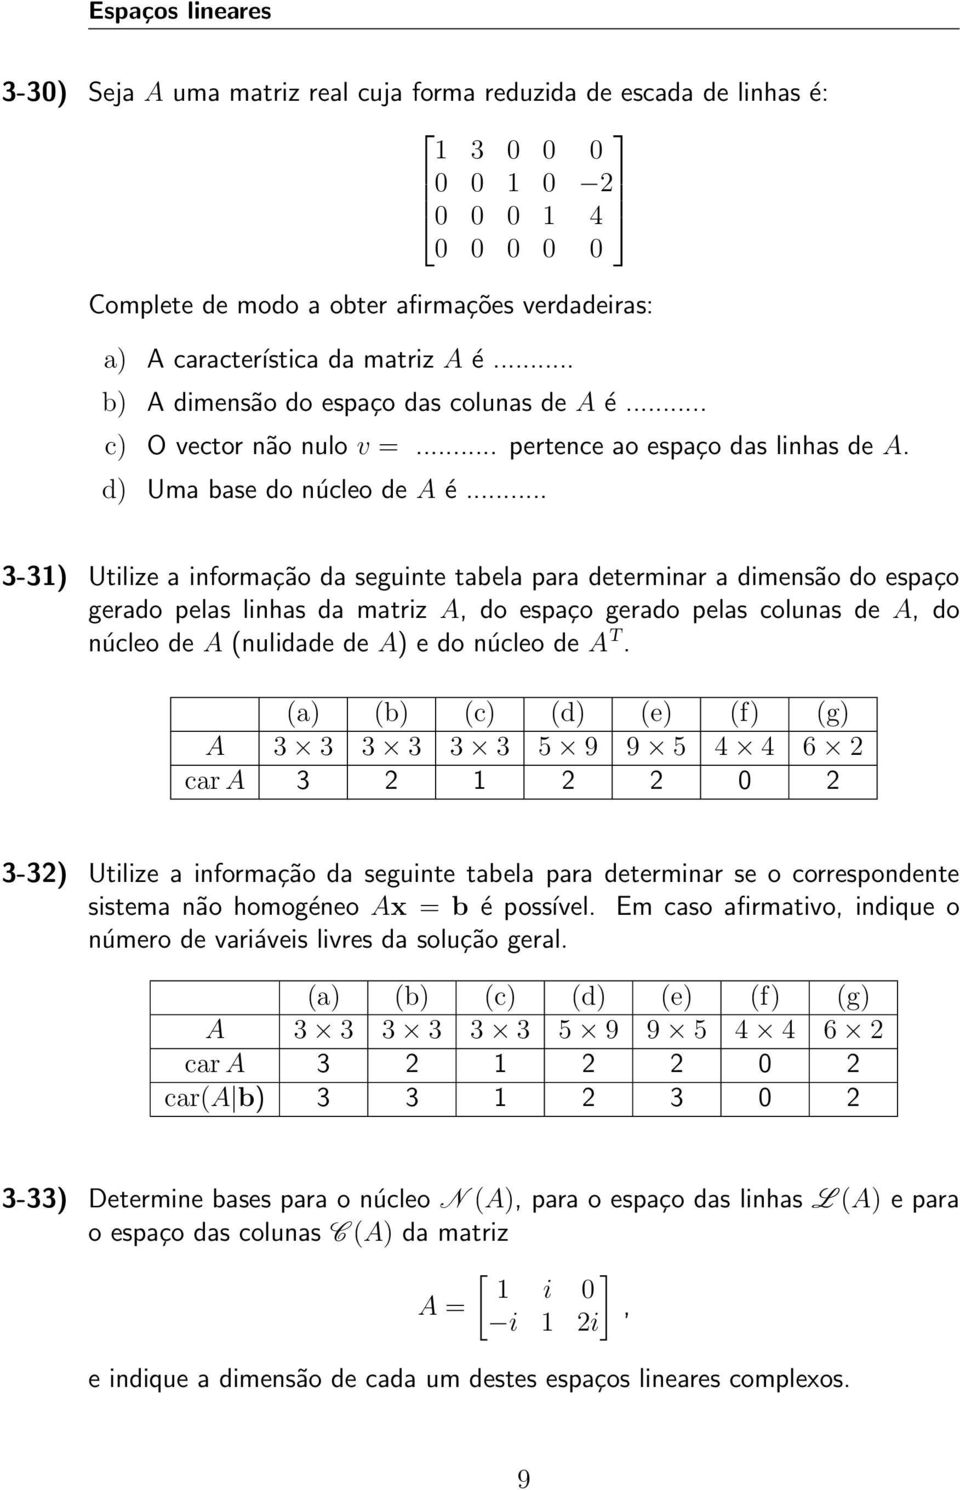 .. 3-31) Utilize a informação da seguinte tabela para determinar a dimensão do espaço gerado pelas linhas da matriz A, do espaço gerado pelas colunas de A, do núcleo de A (nulidade de A) e do núcleo